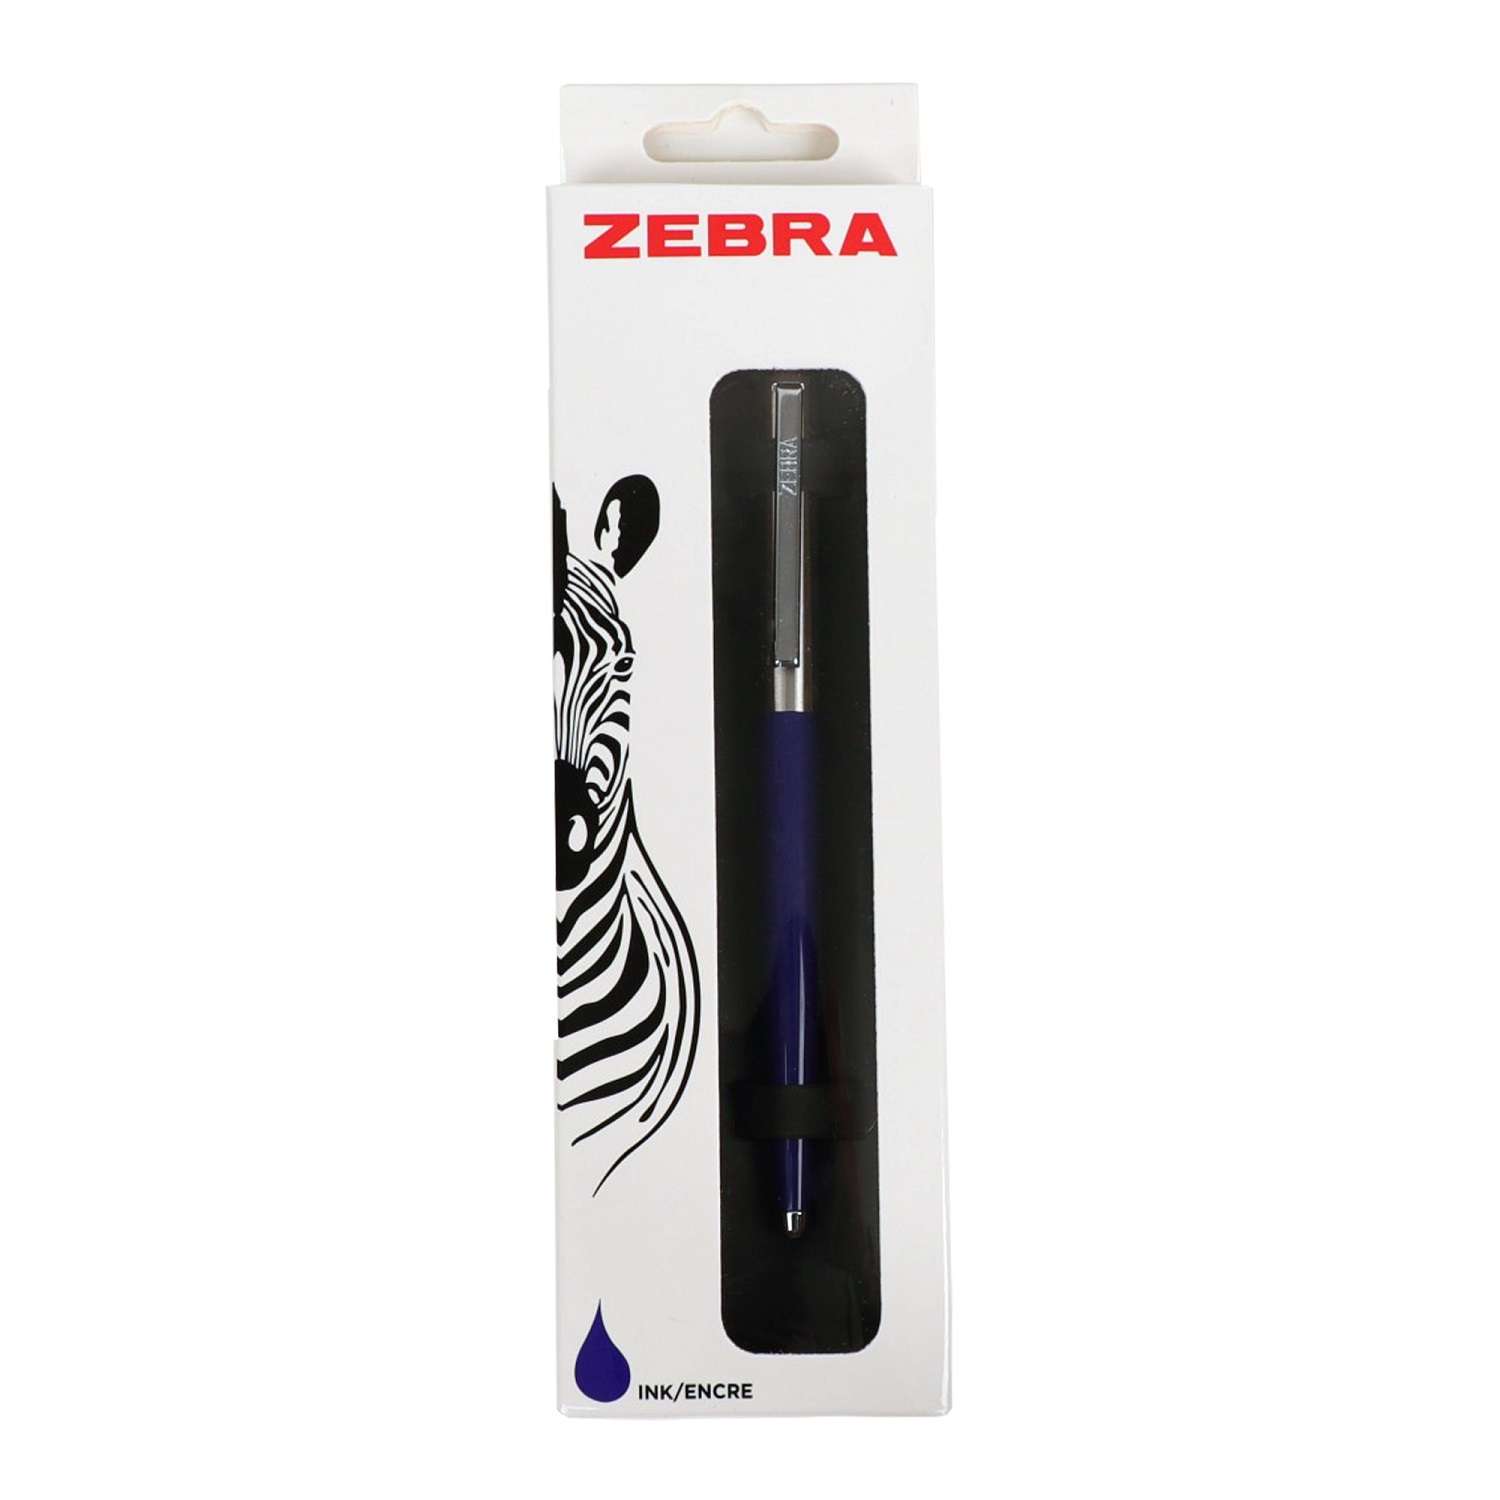 Ручка шариковая ZEBRA 901 автоматическаяическая Синяя 1215674 - фото 2